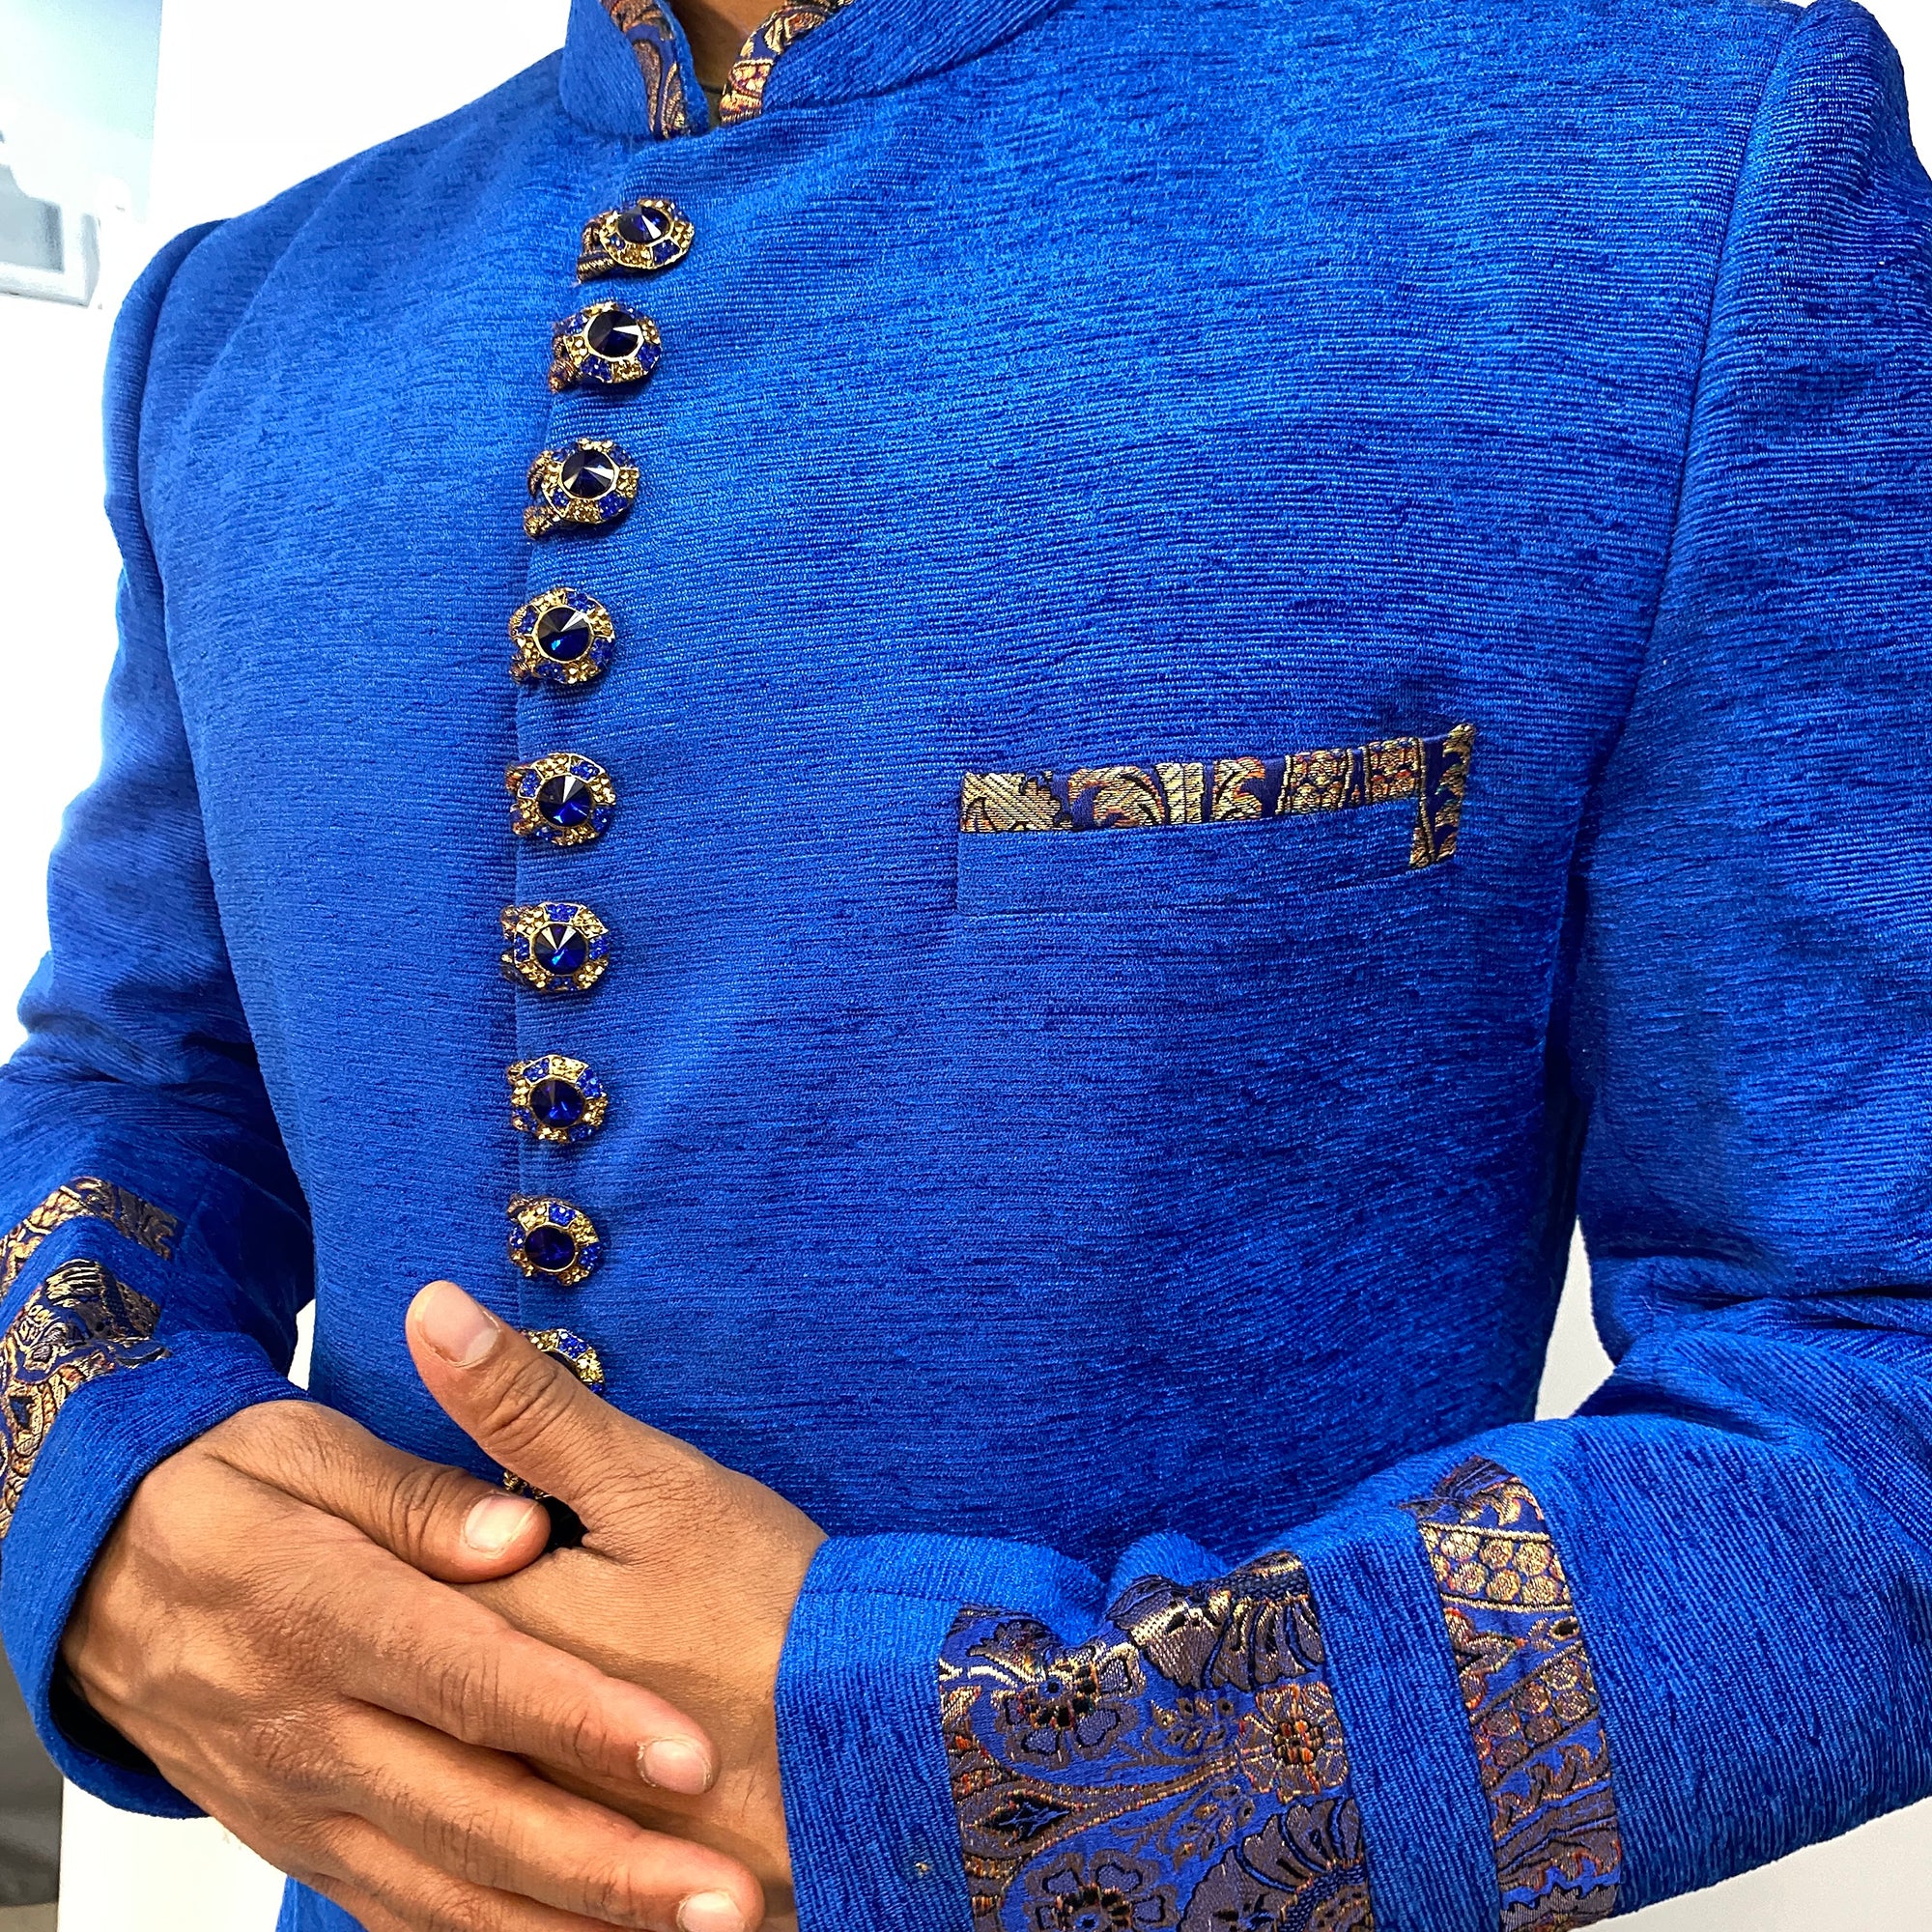 Royal Blue Indowestern Sherwani - Vintage India NYC